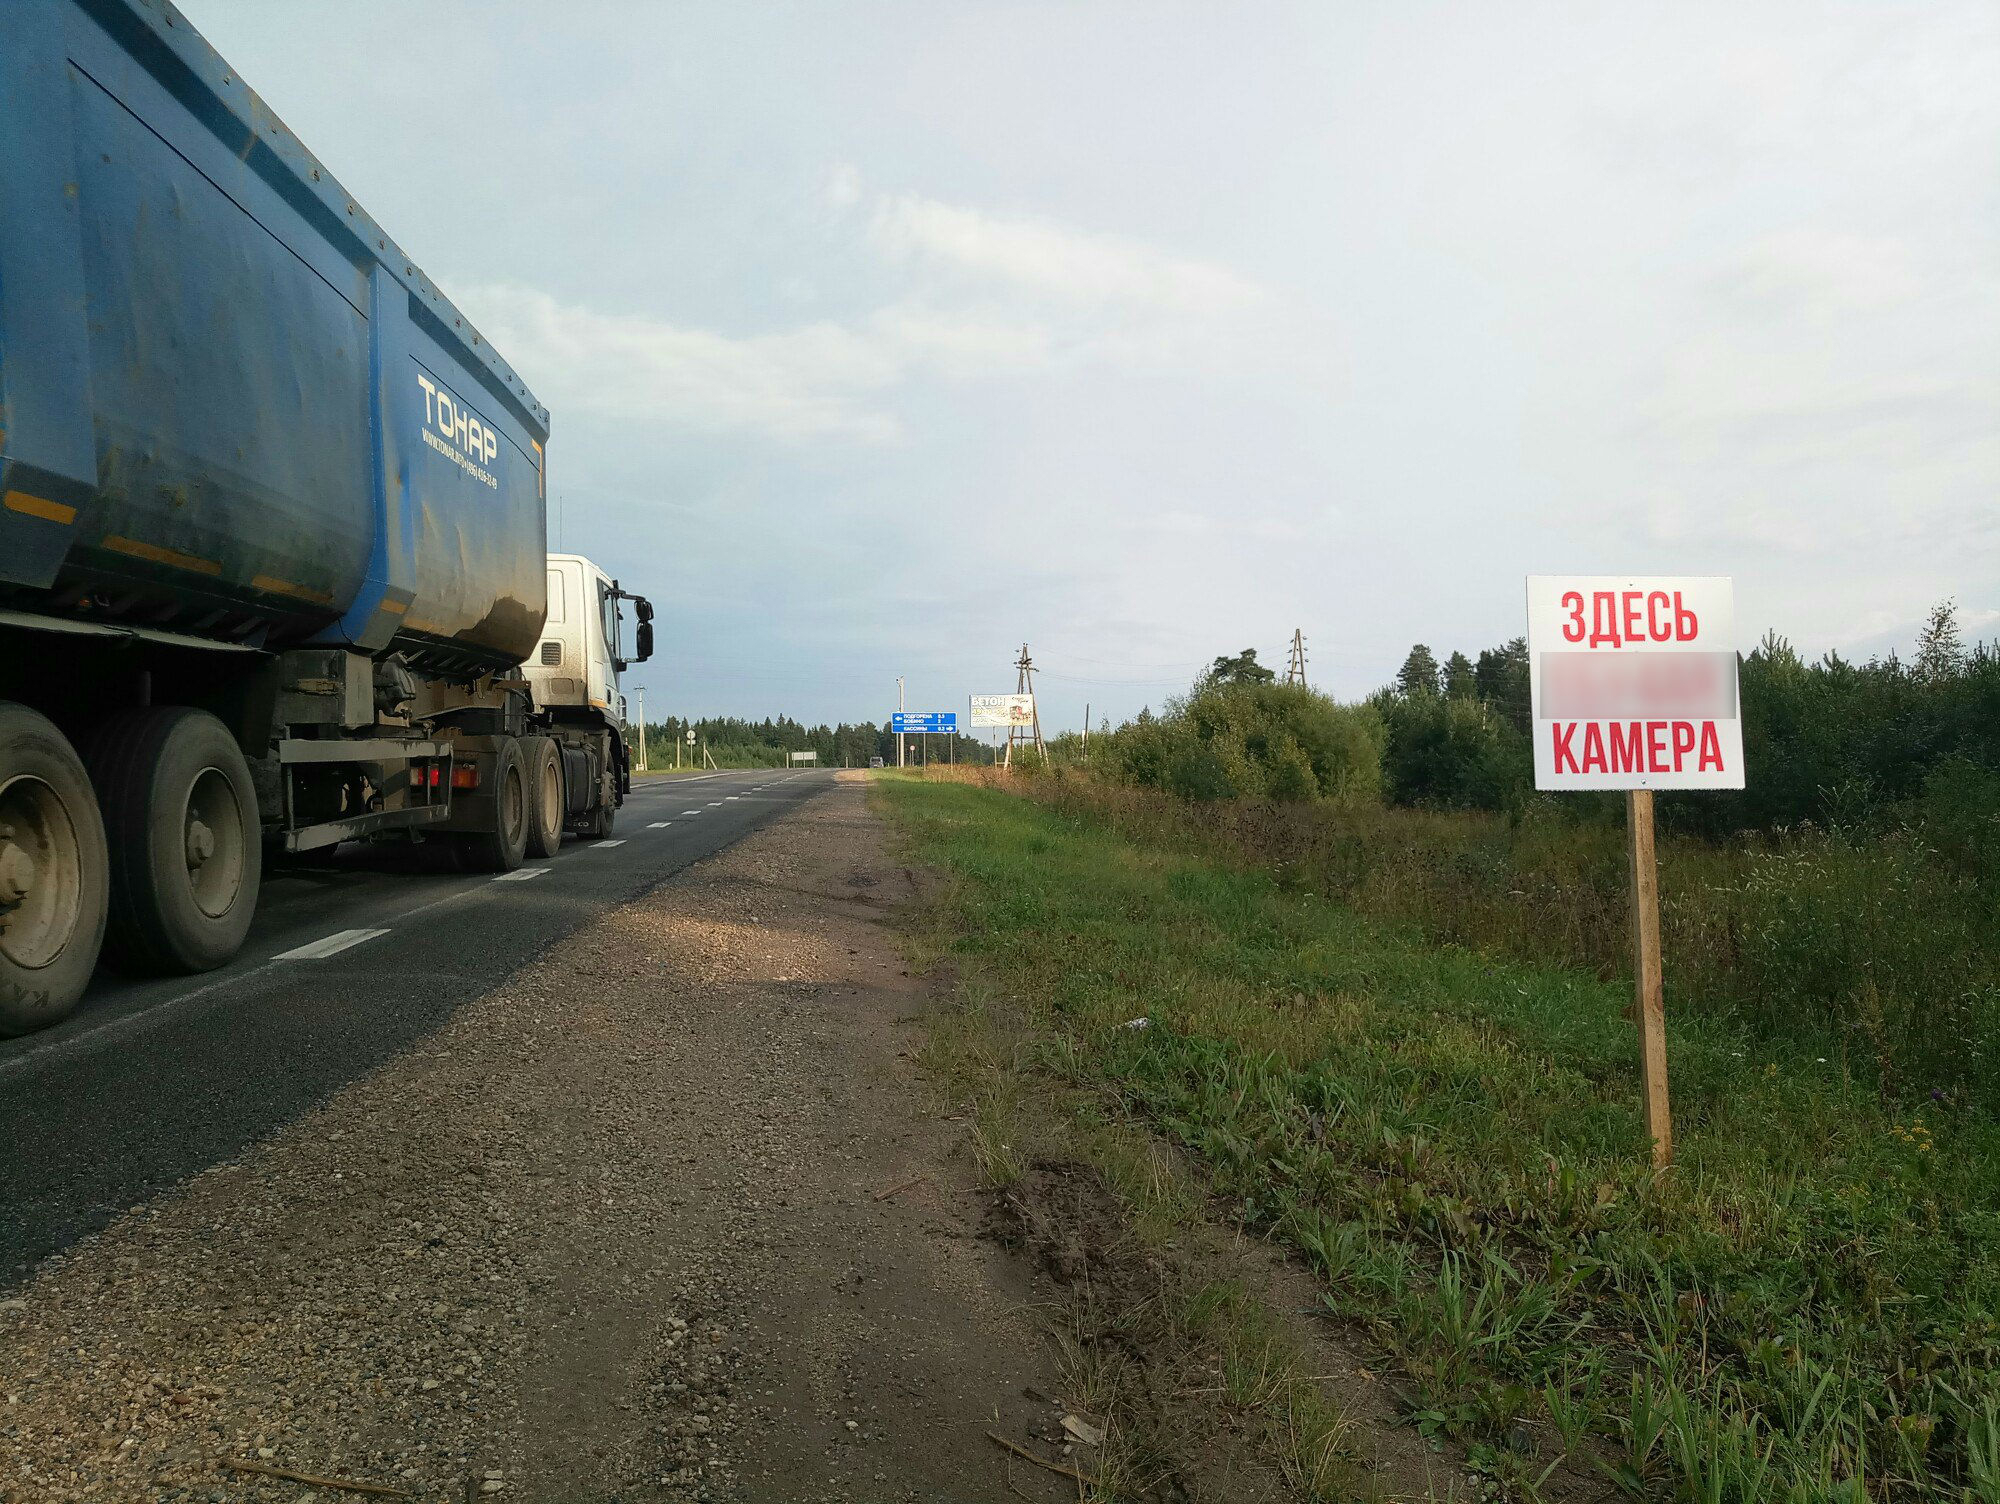 На трассе Киров - Пермь установили матерную табличку